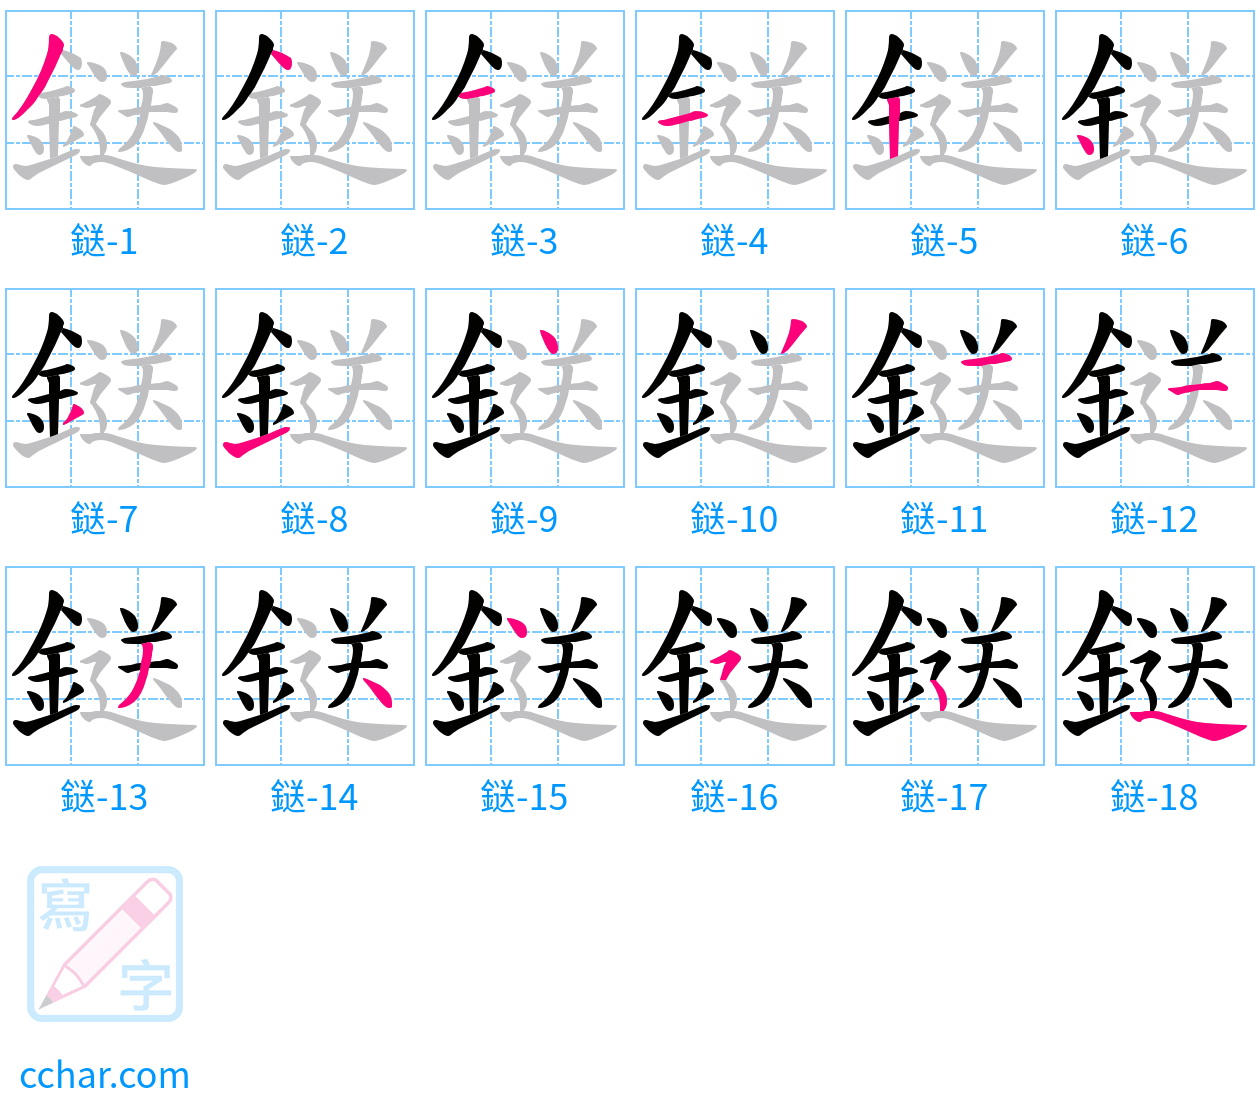 鎹 stroke order step-by-step diagram